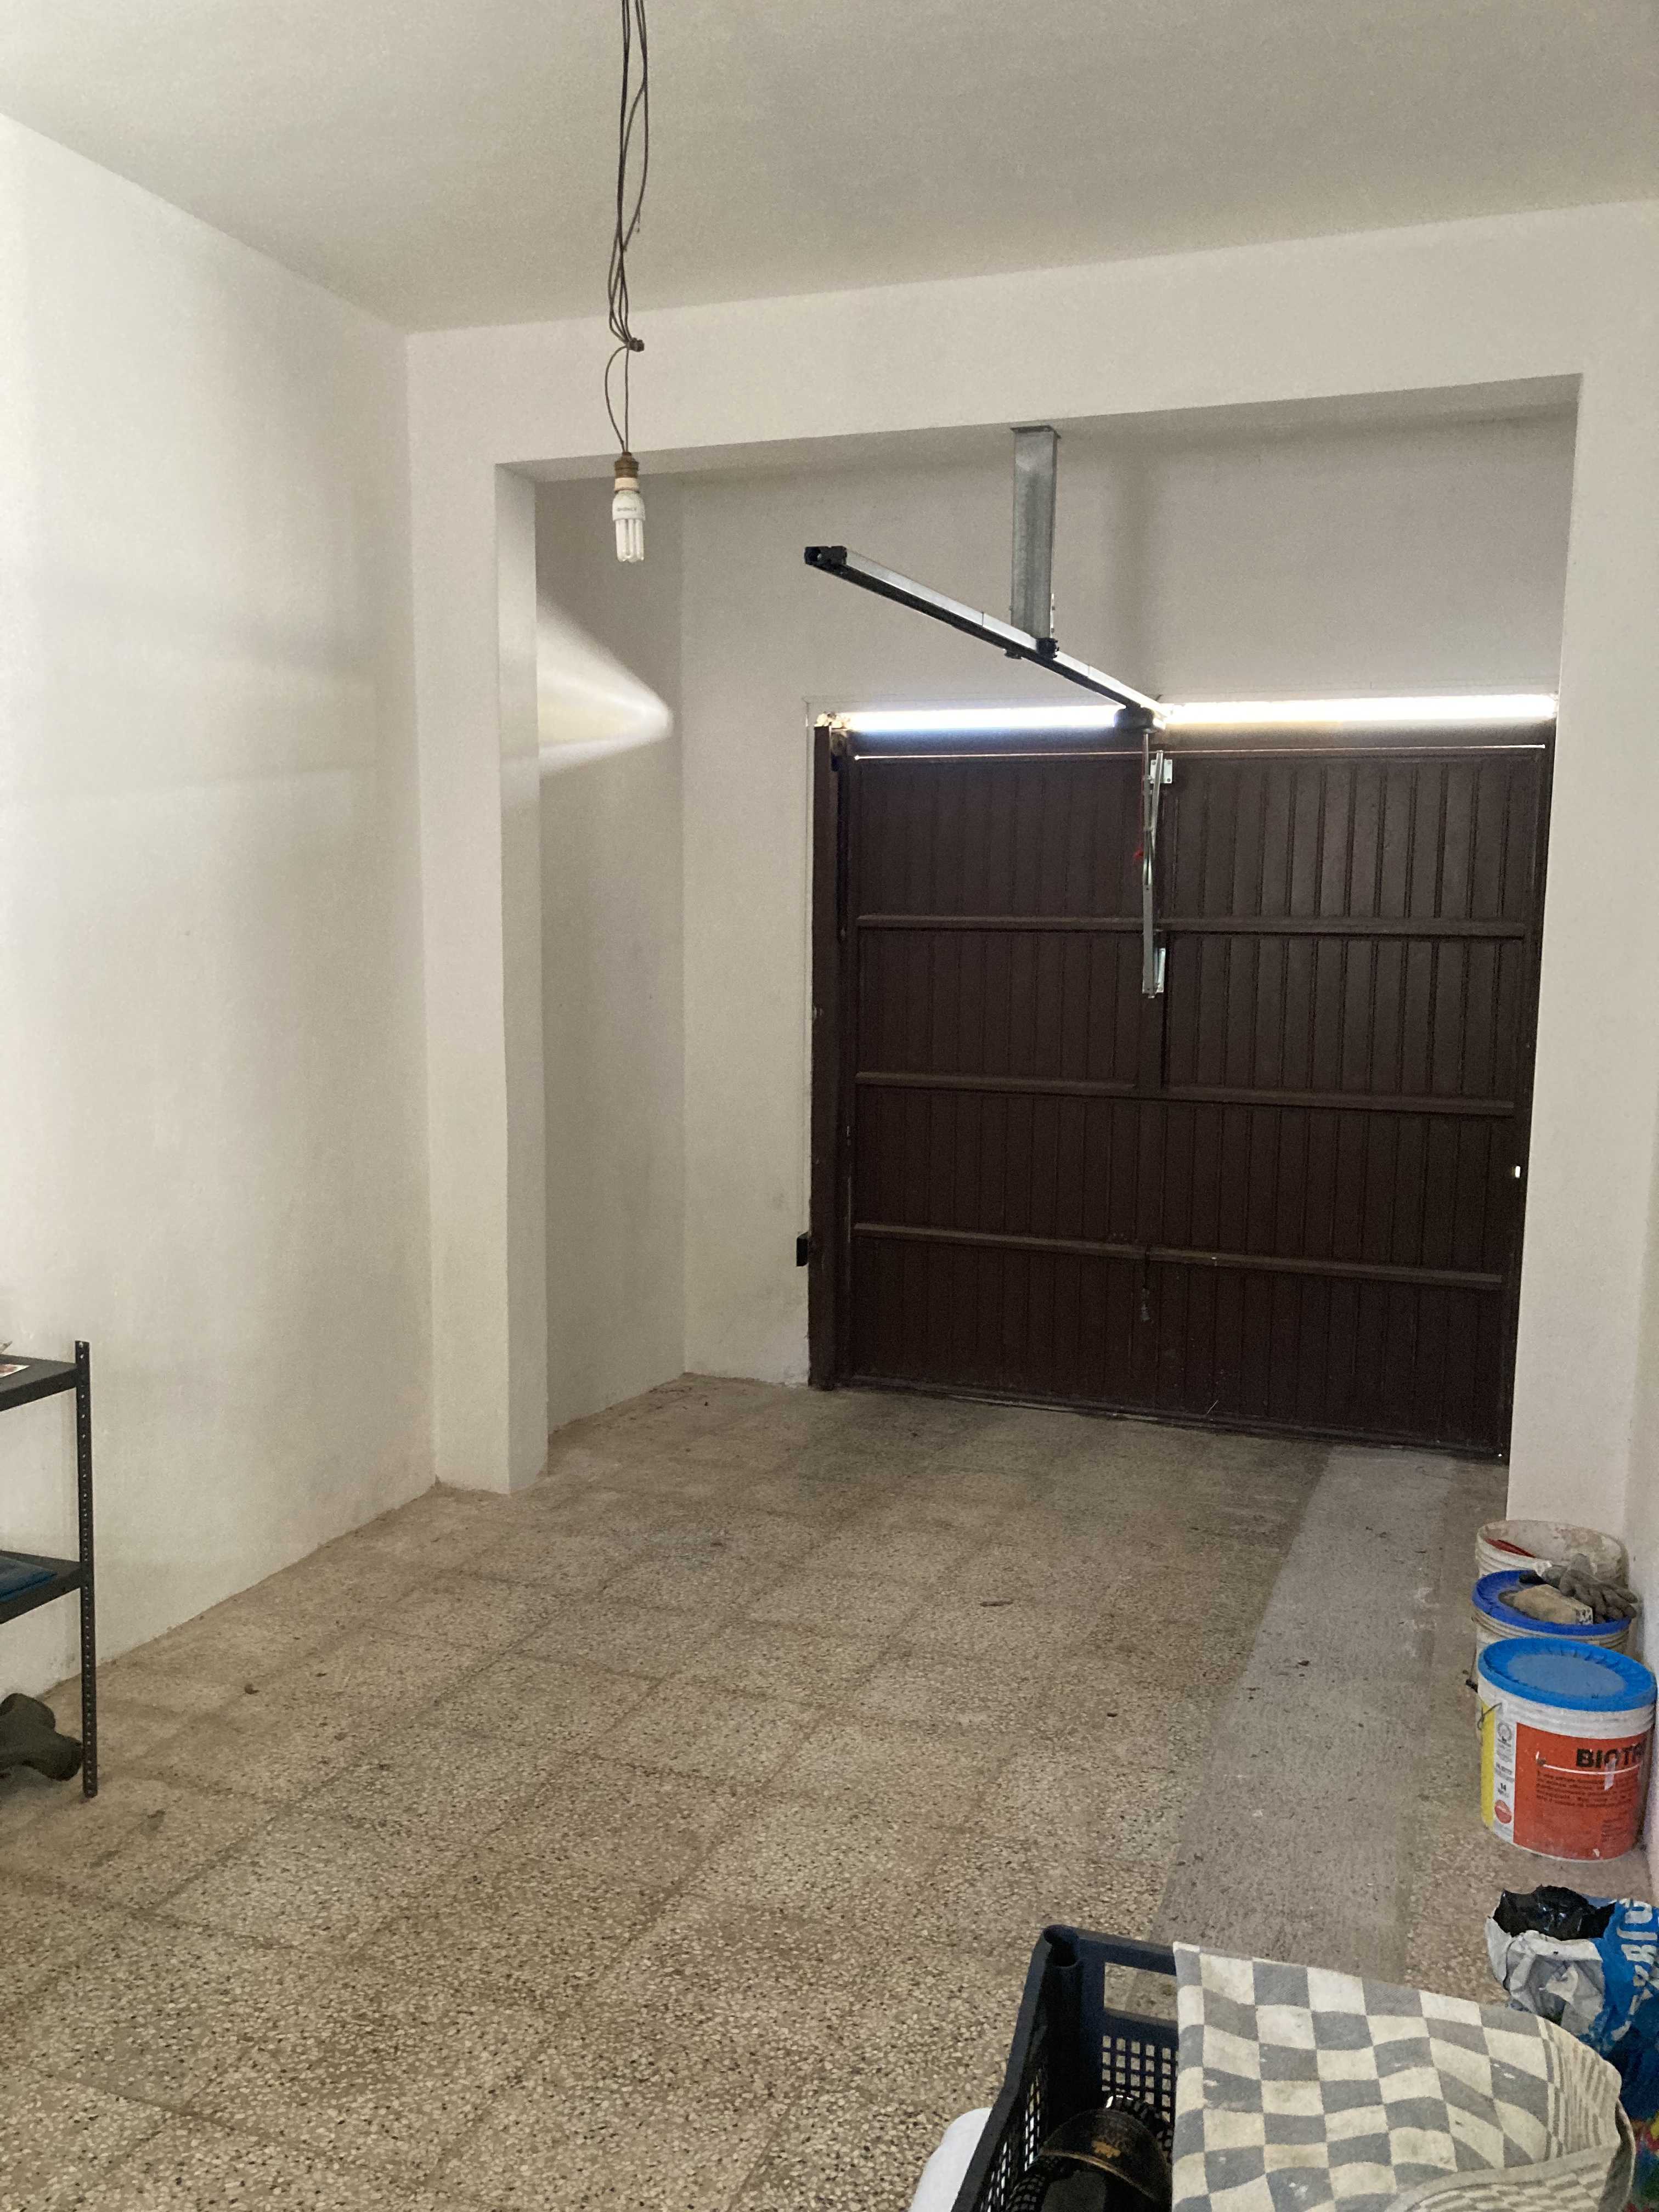 Vendite Salento: Vendita appartamento (Castrignano del Capo) - camera